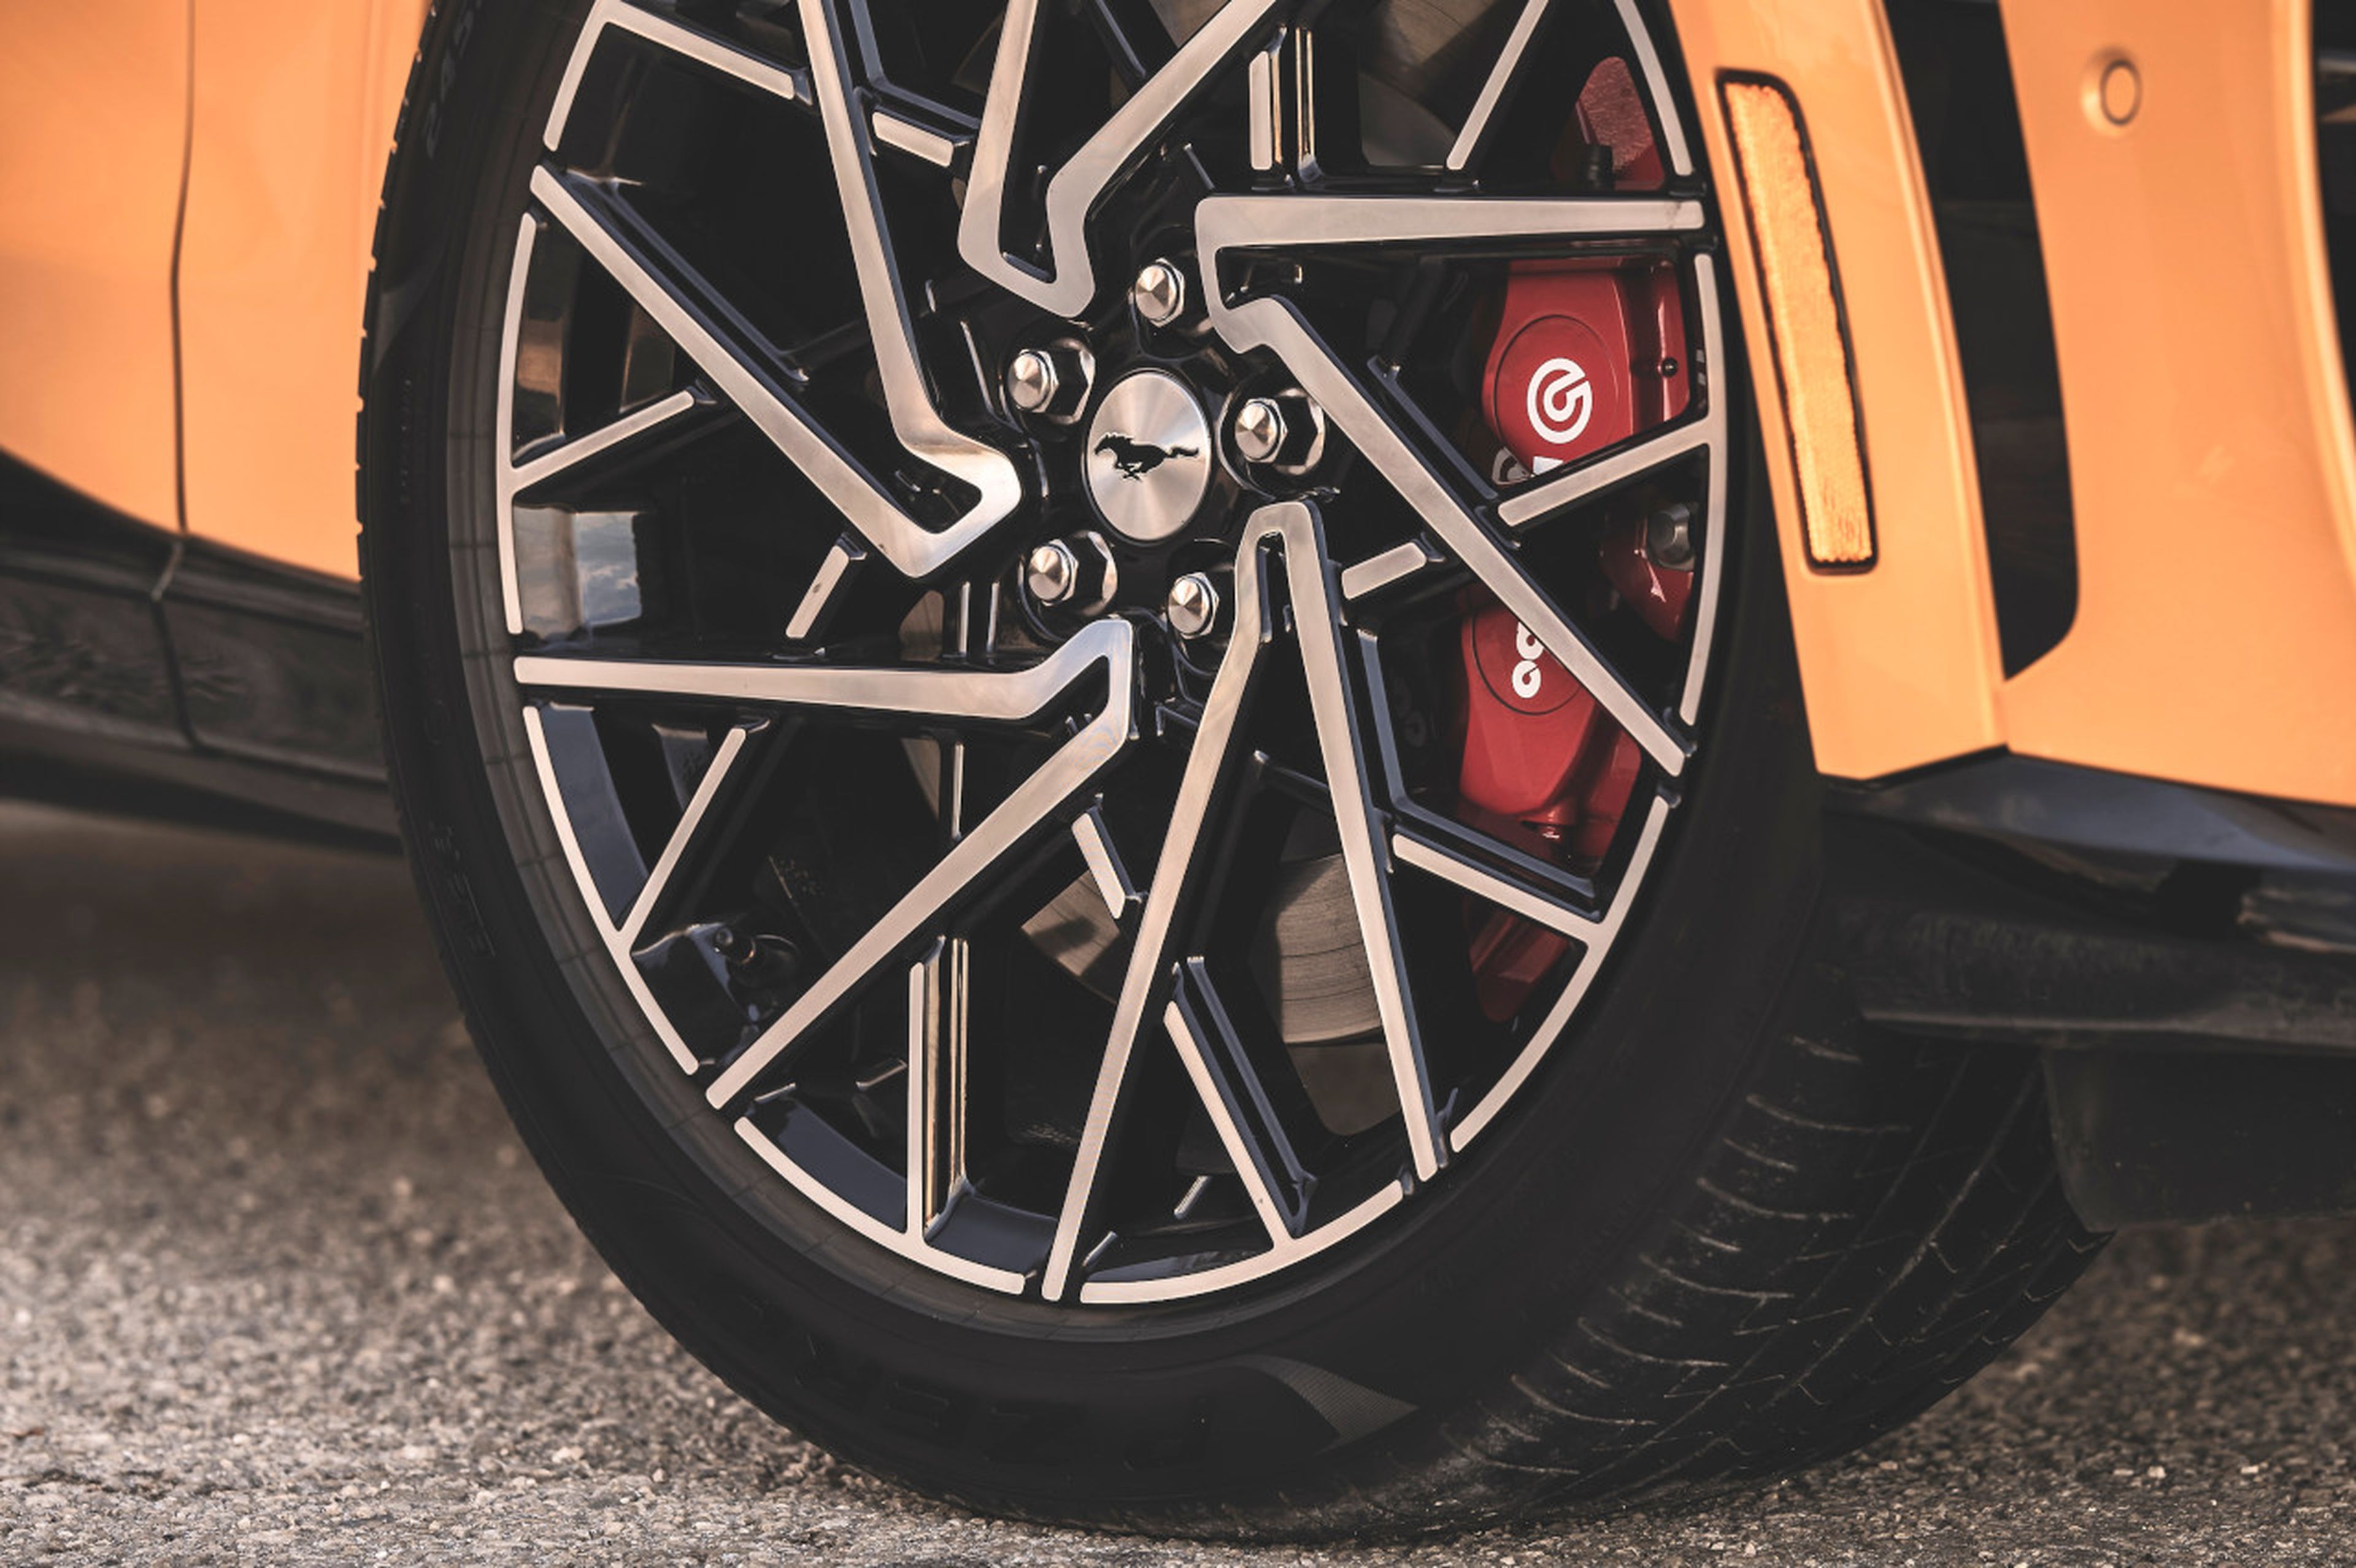 Detalle de las pinzas en rojo del equipo de frenos Brembo del Mustang Mach-e GT